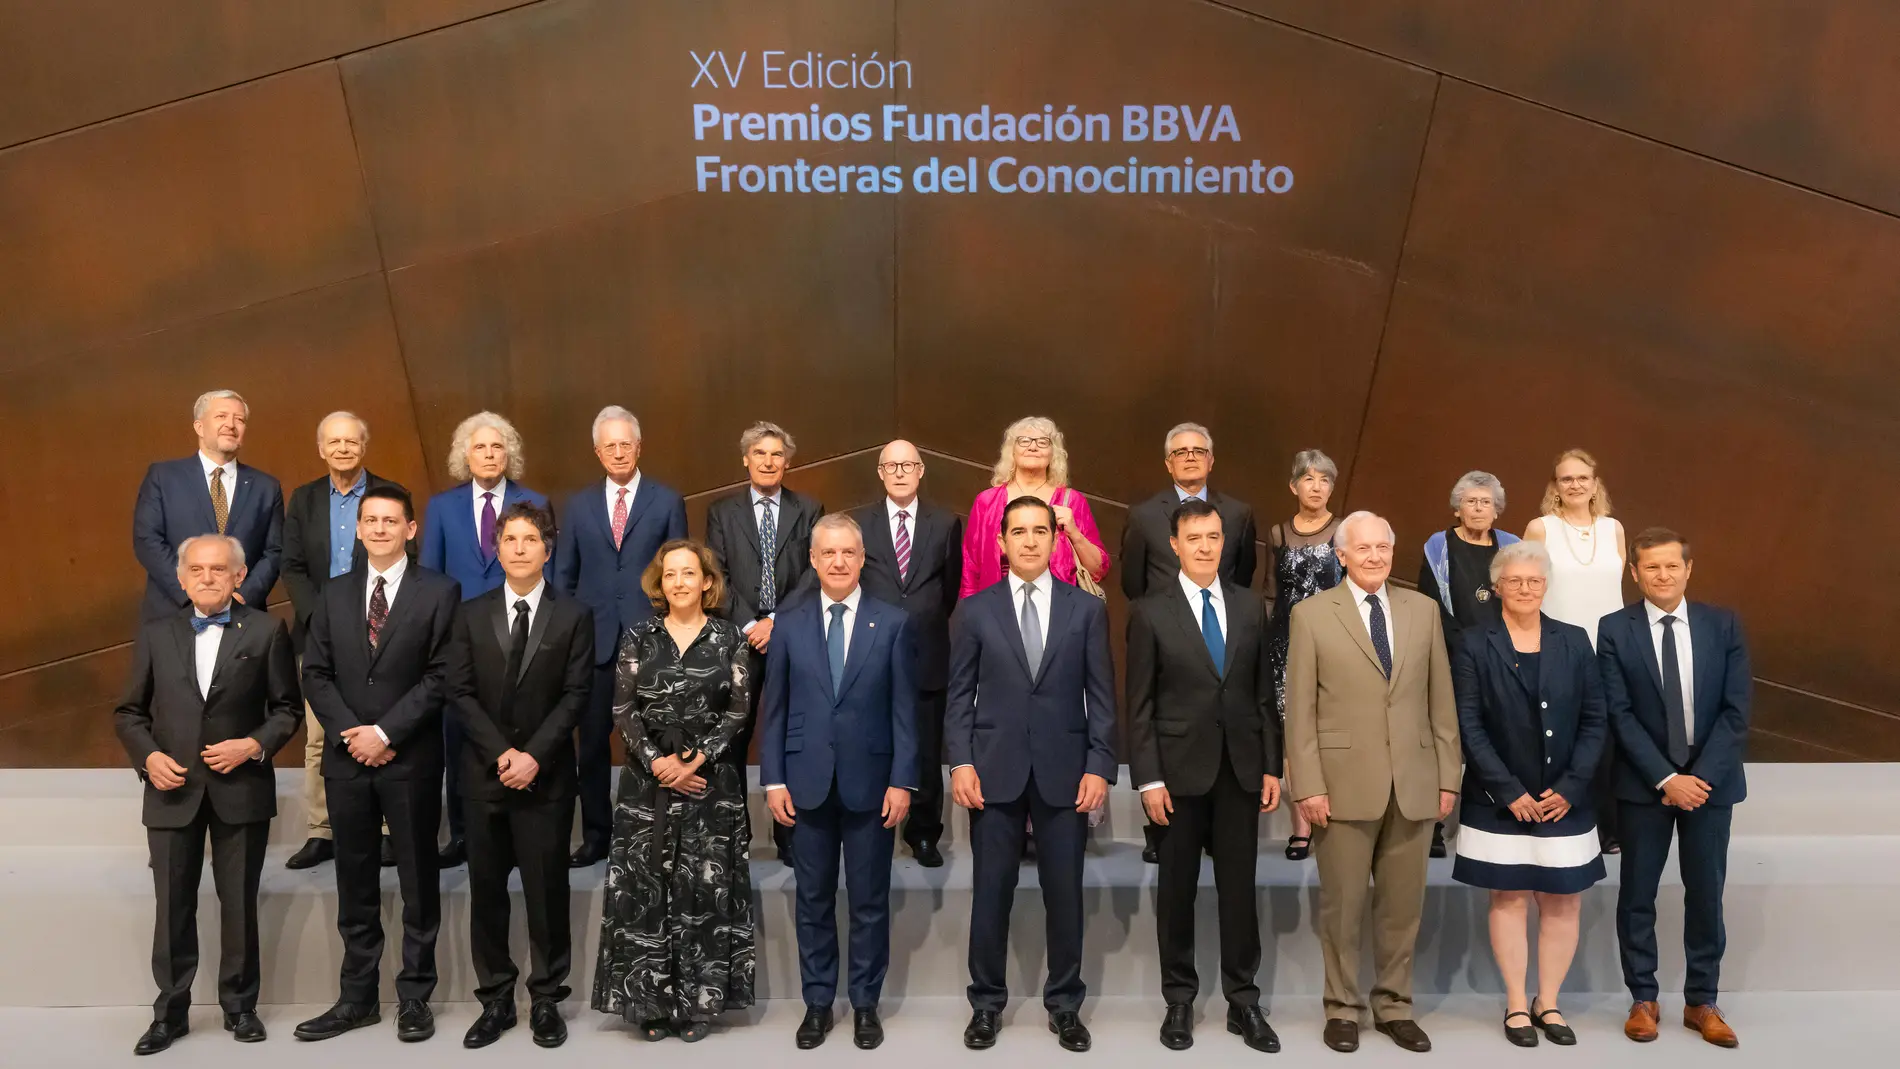 En el centro de la imagen, la presidenta del CSIC, Eloísa del Pino; el Lehendakari, Íñigo Urkullu; el presidente de la Fundación BBVA, Carlos Torres Vila; y el director de la Fundación BBVA, Rafael Pardo, con los premiados.